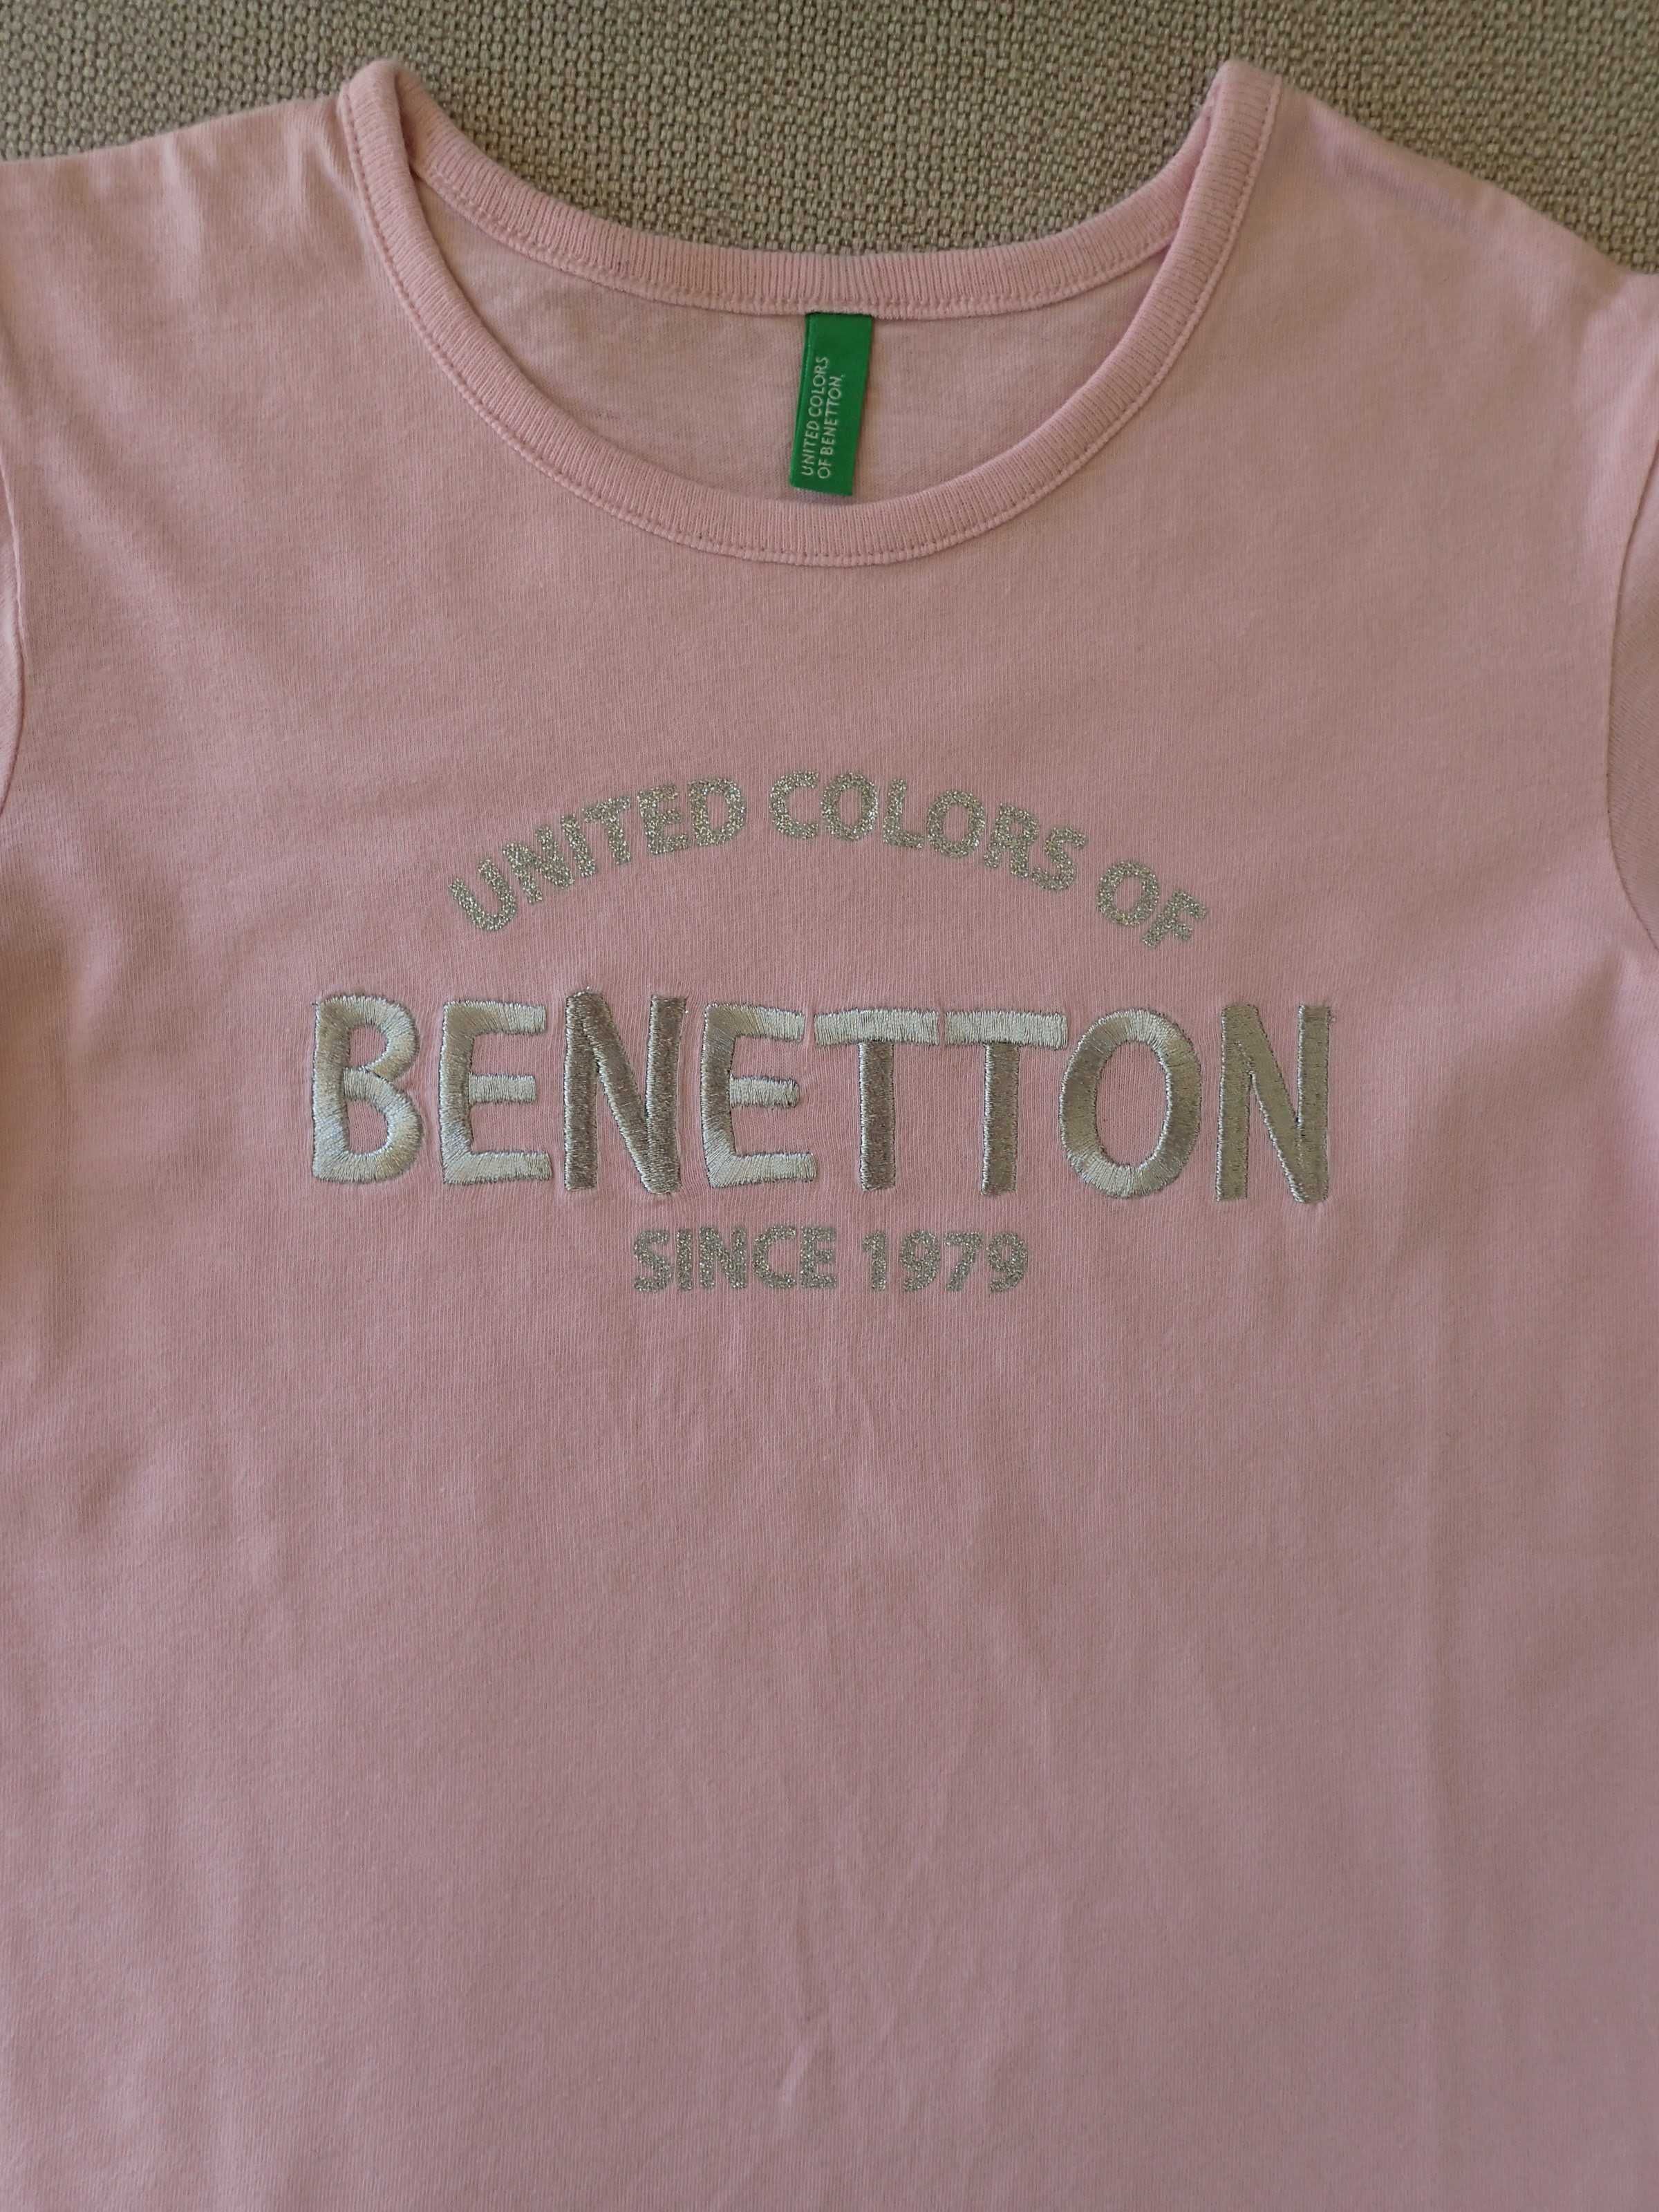 Benetton T-shirt pudrowy róż 130 cm wyszyty napis